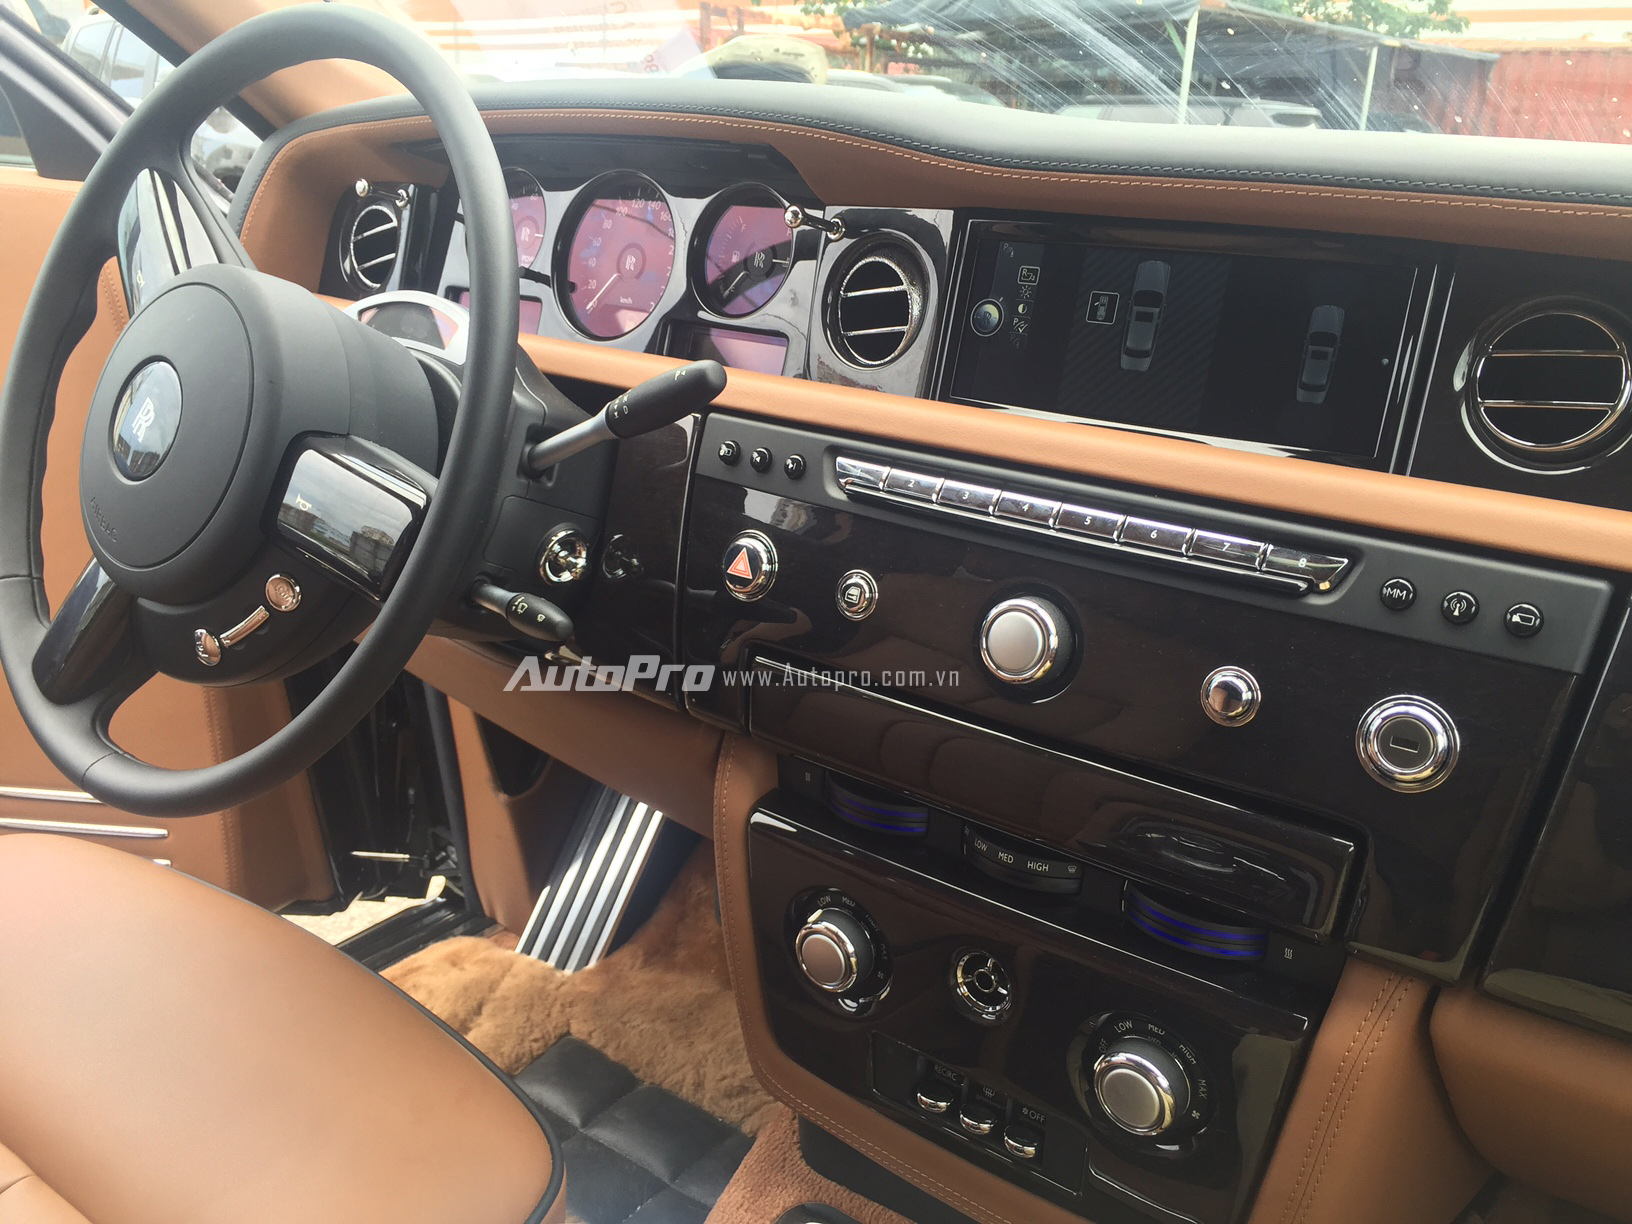 
Hệ thống bảng điều khiển trung tâm của hàng ghế lái trên Rolls-Royce Phantom EWB.
